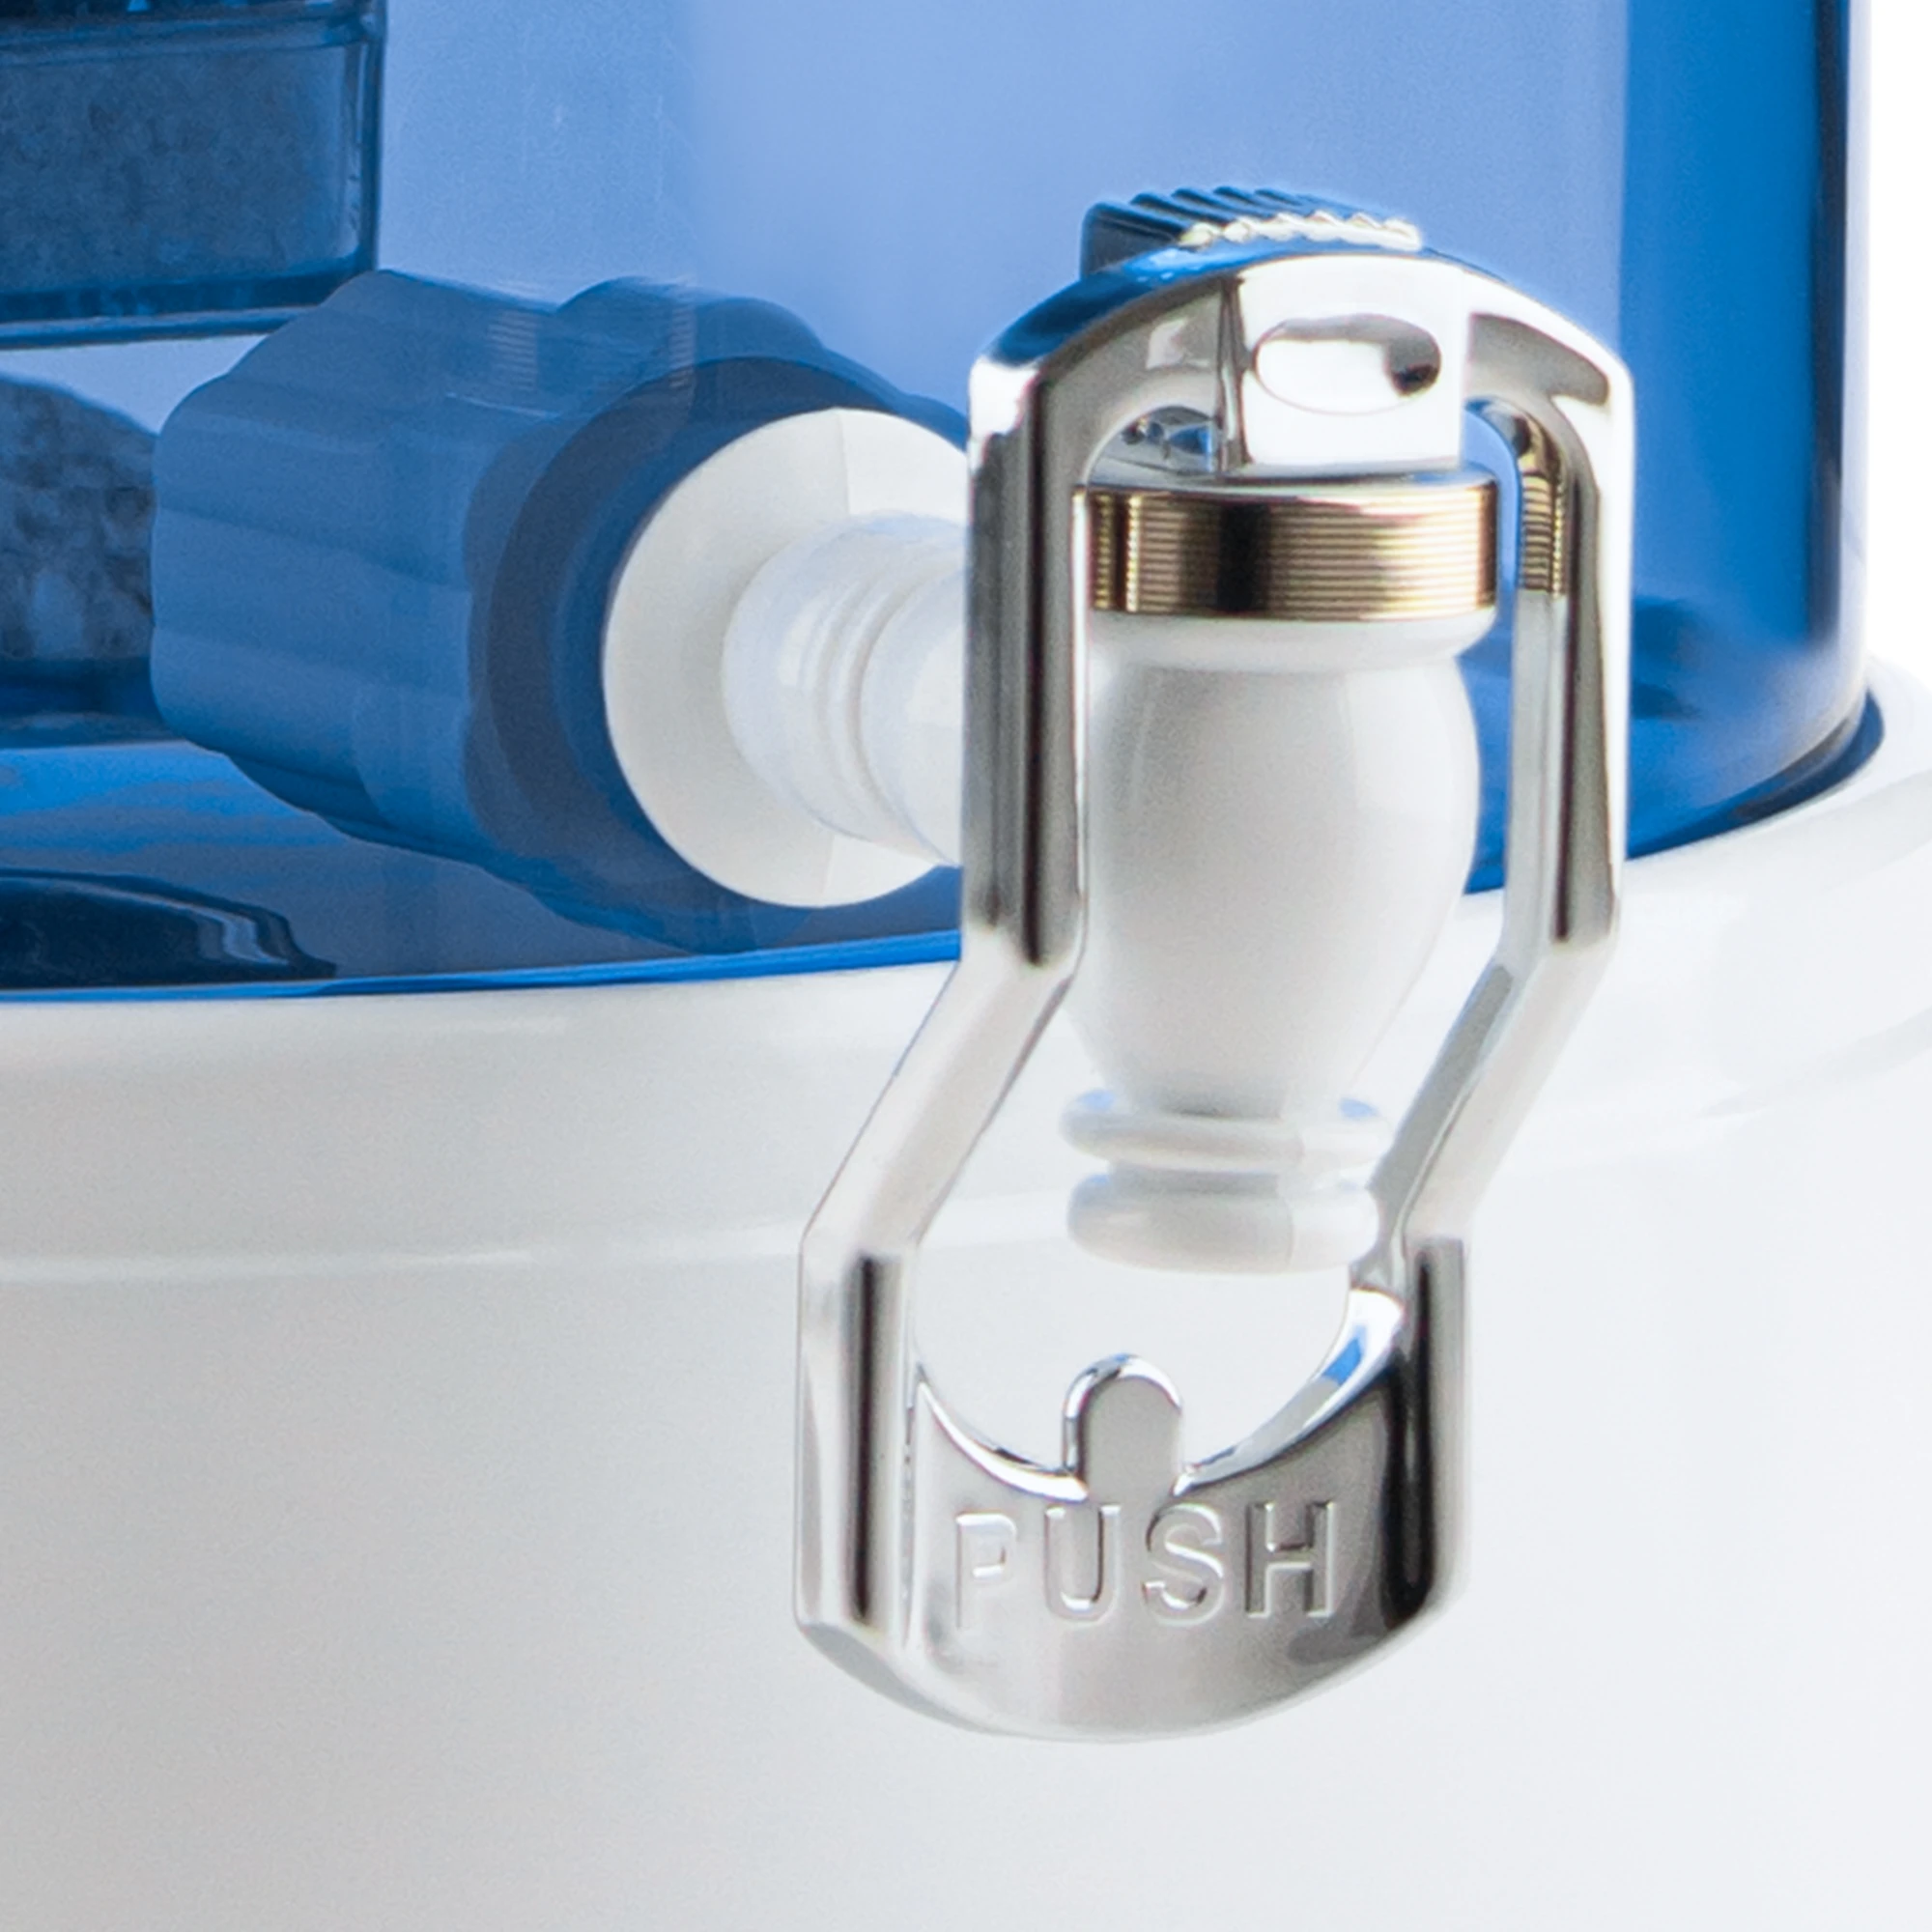 Zu sehen ist der Kunststoff Wasserhahn in weiß für Acala Stand Wasserfilter an einem Glastank in blau montiert. Der Hahn hat einen großen Bügel in silber auf dem das Wort Push in silbernen Großbuchstaben zu lesen ist.